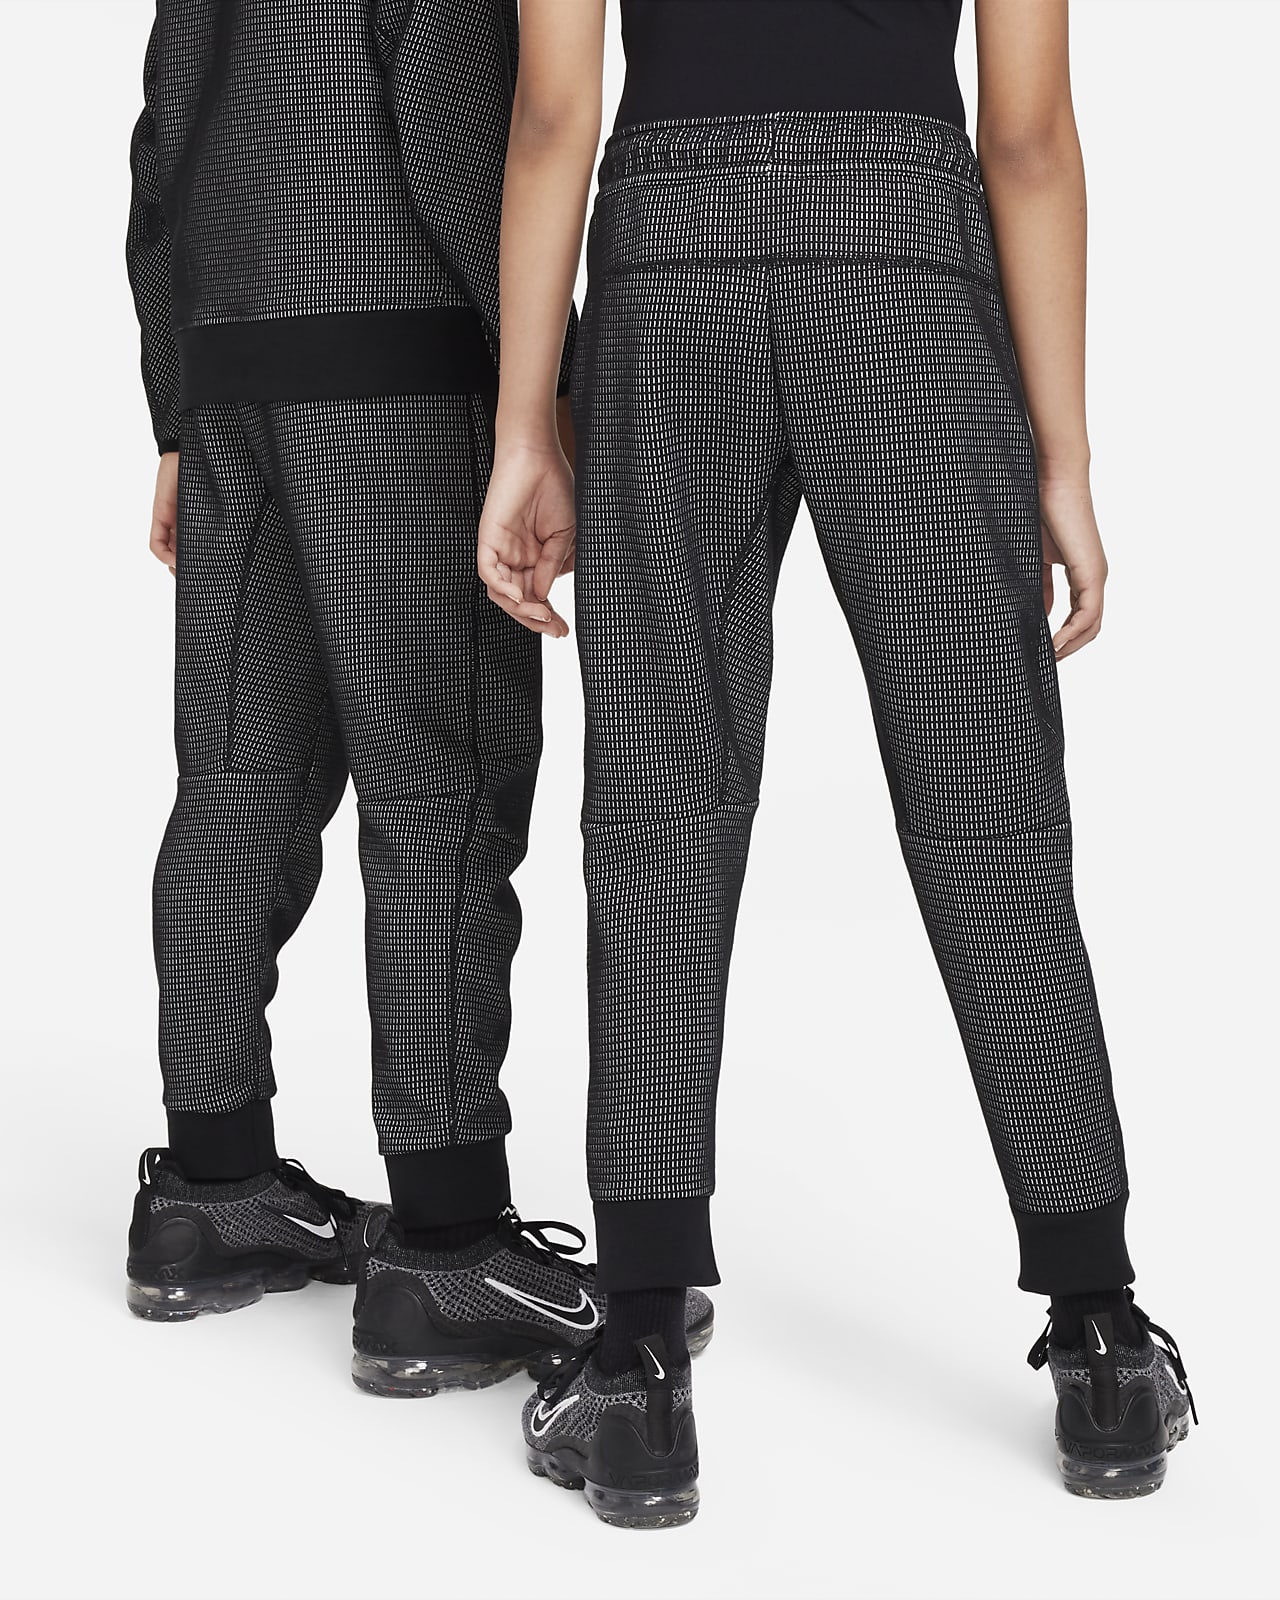 Nike Sportswear Junior Boys' Tech Fleece Pants Black / Black